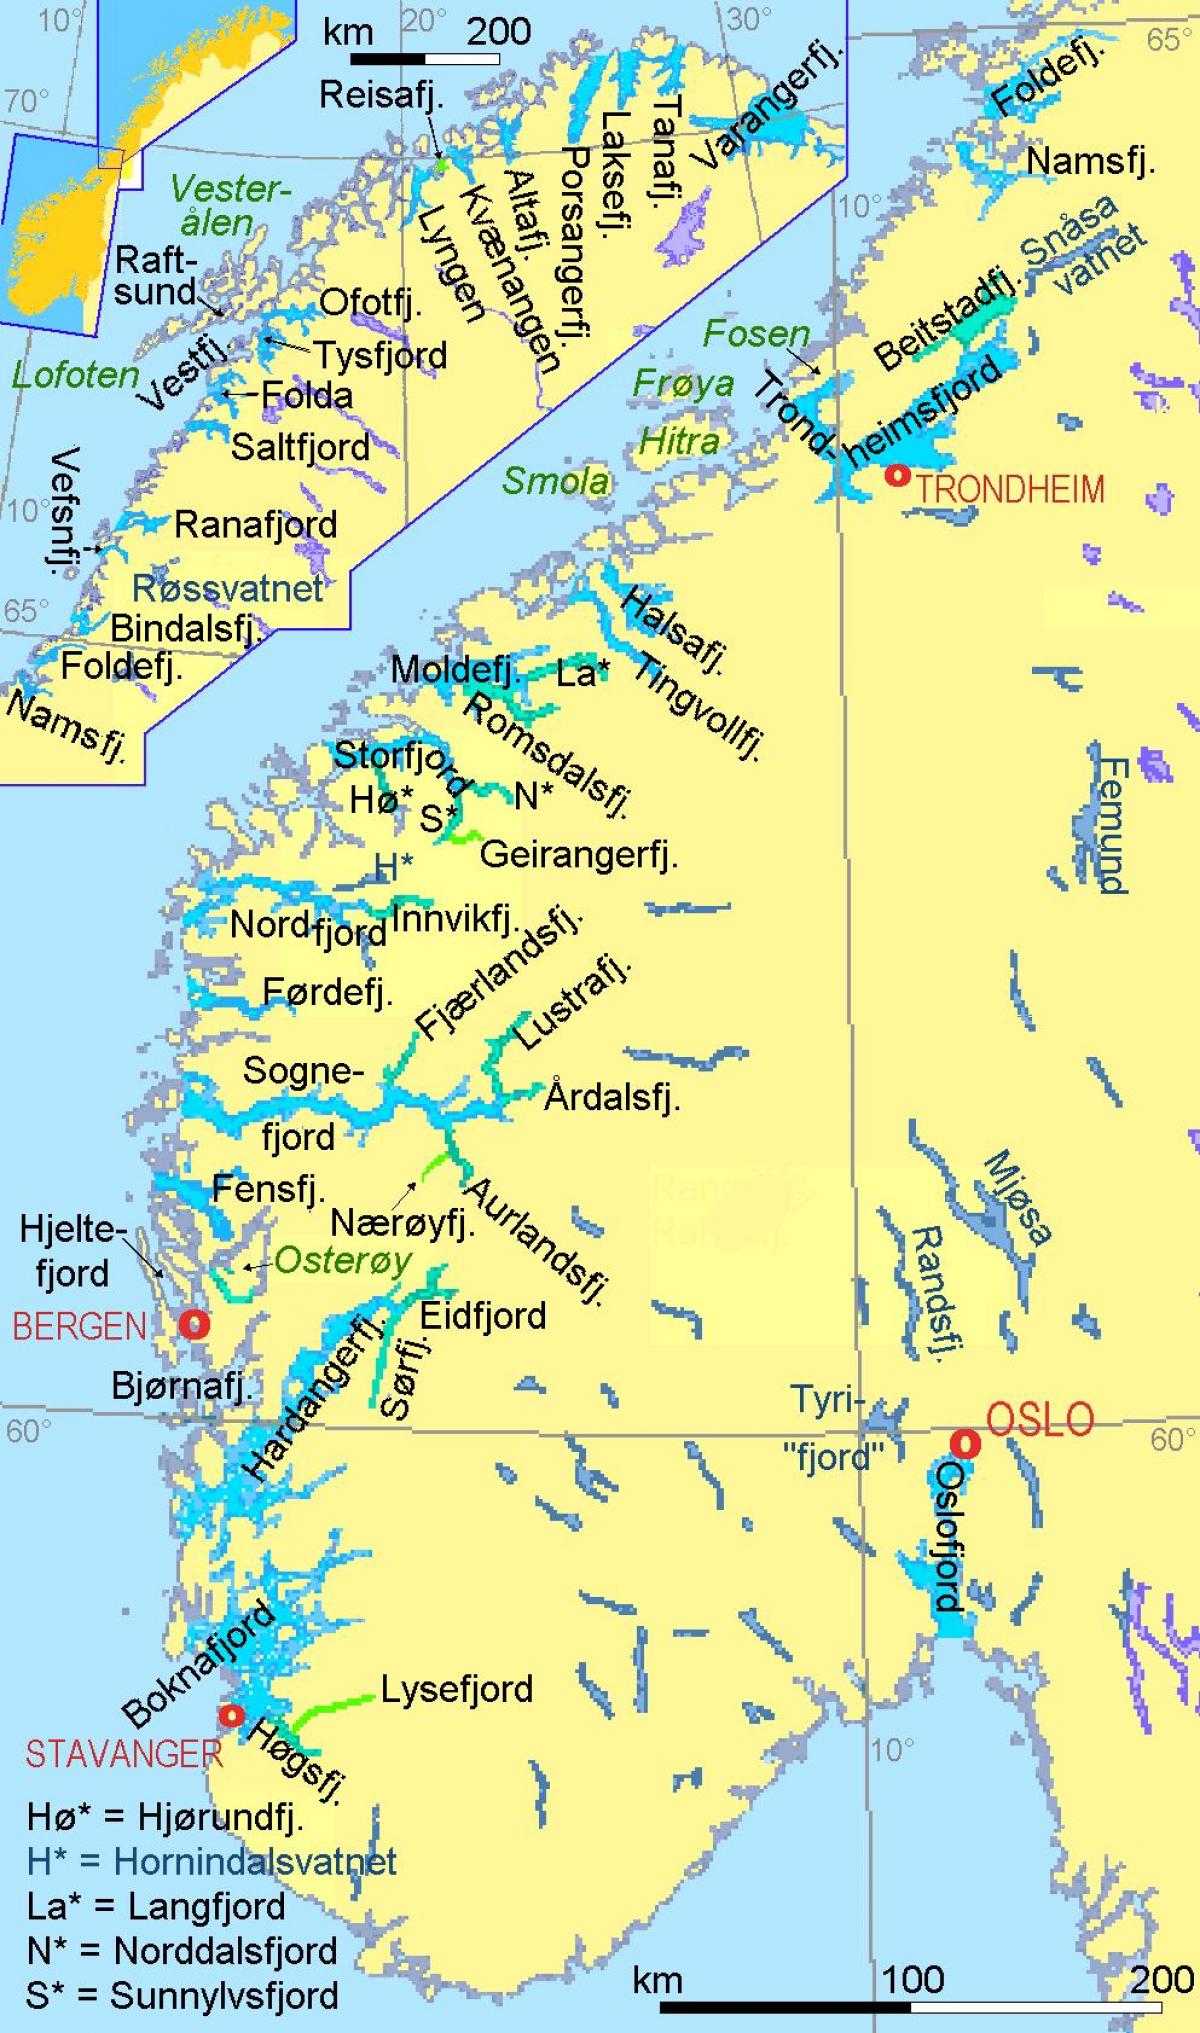 peta Norway menunjukkan fjord